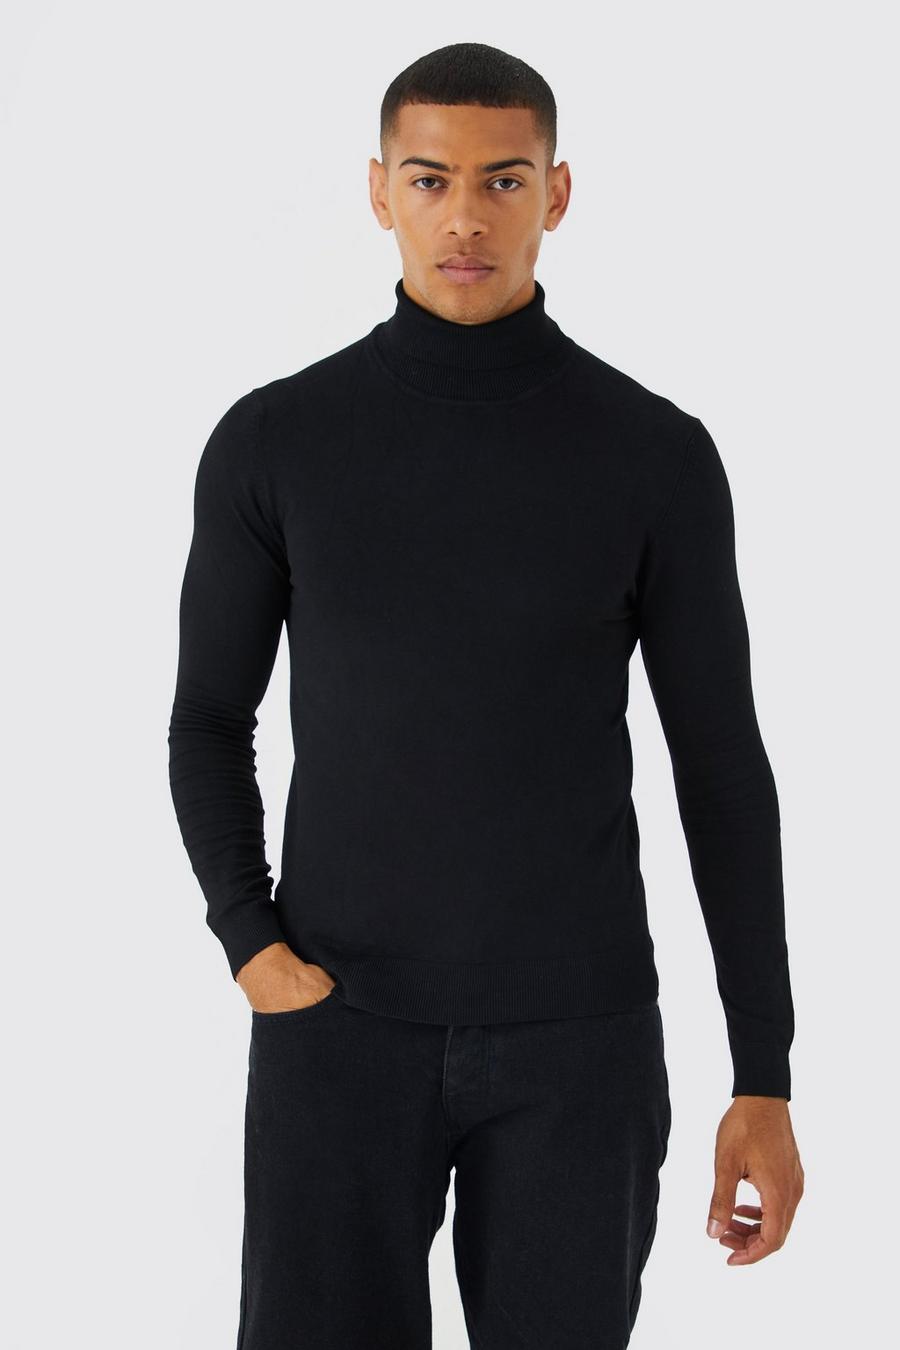 שחור nero סוודר בגזרה צמודה מבד ממוחזר עם צווארון נגלל